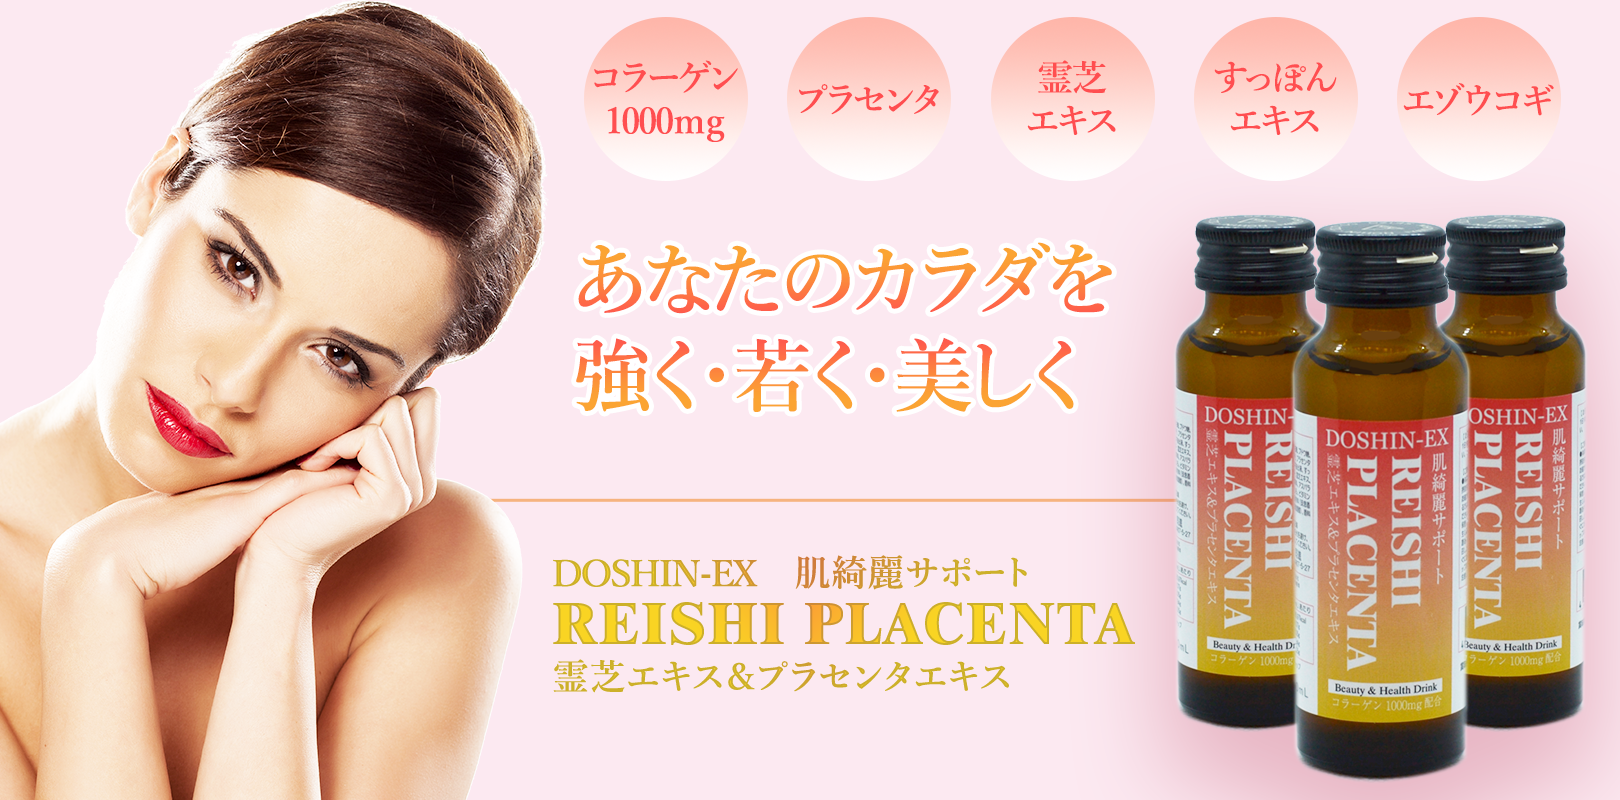 Reishi Placenta